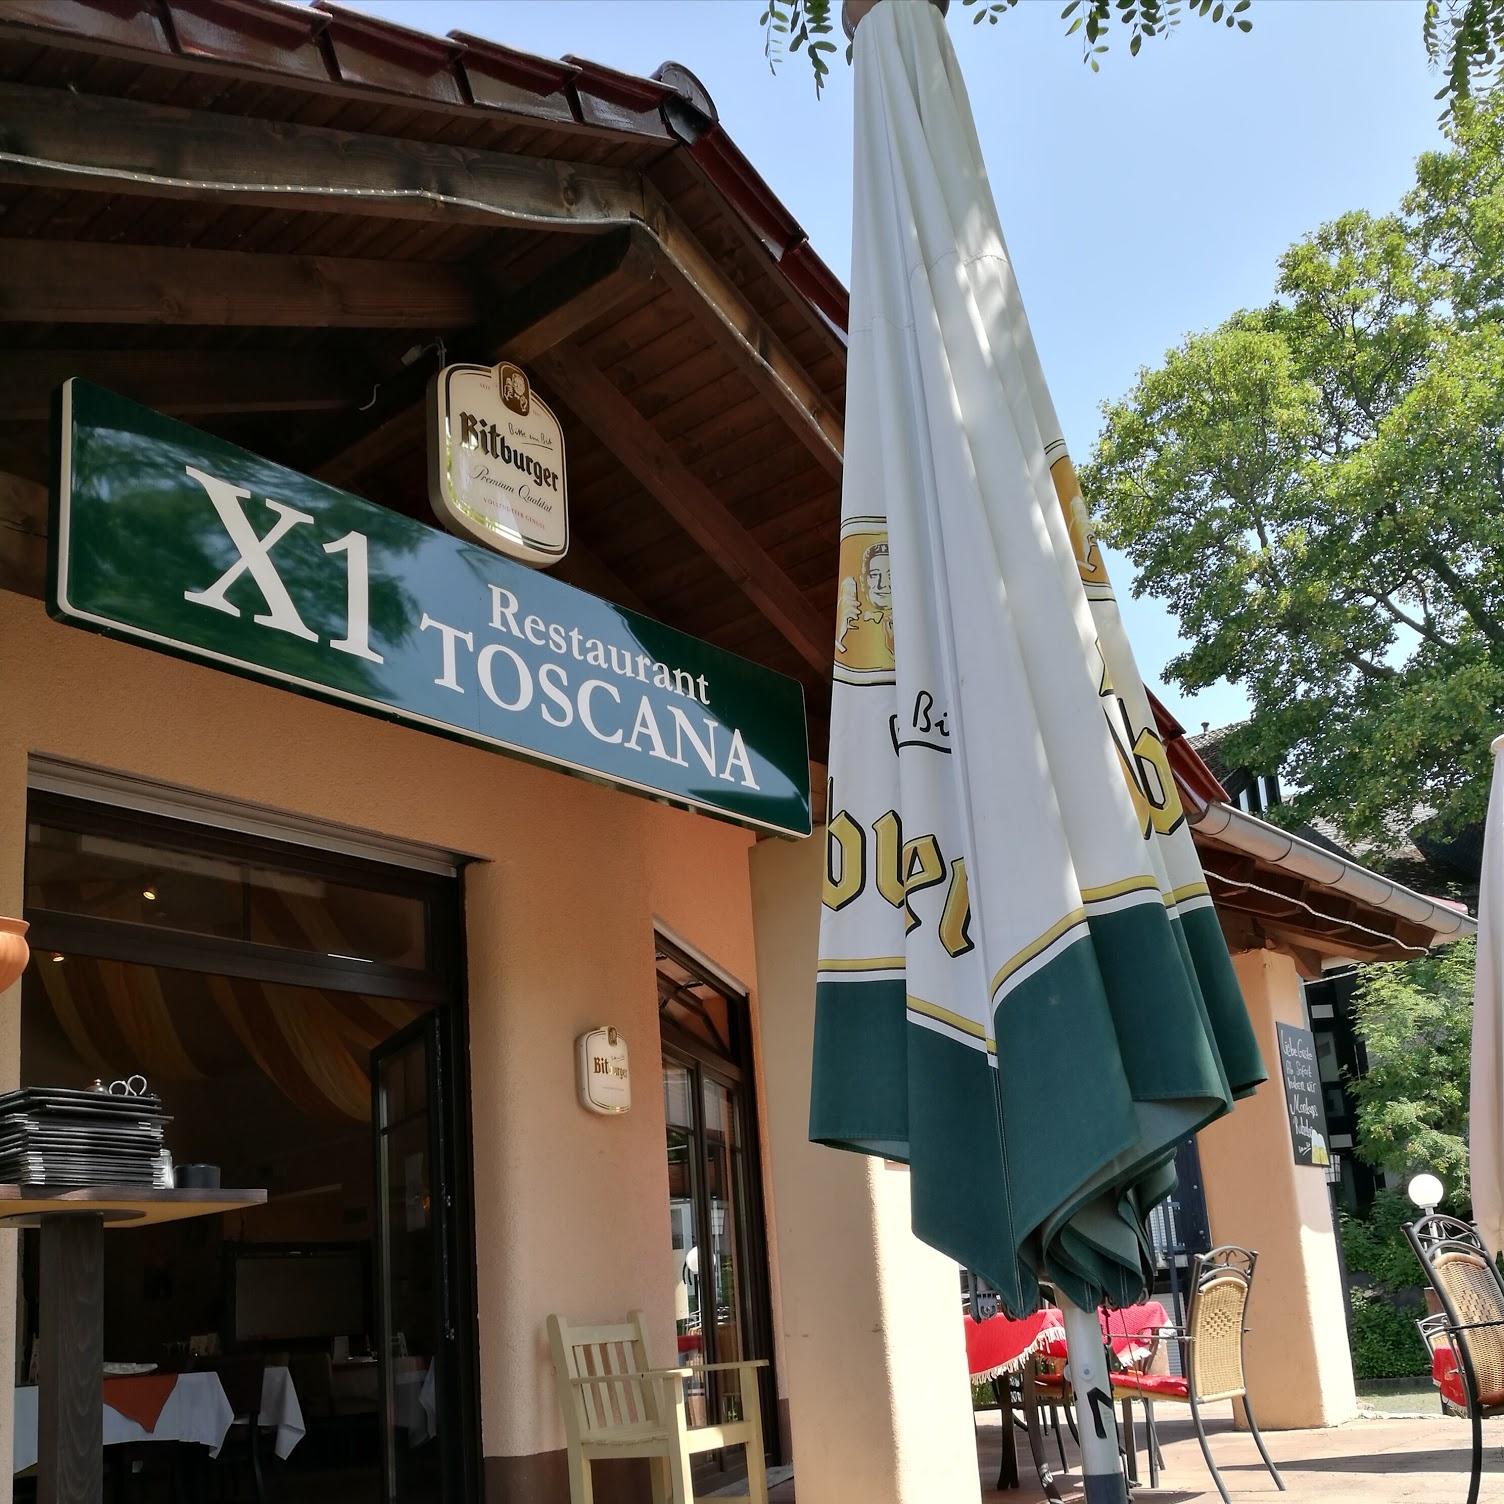 Restaurant "X1- - Pizzeria Toscana" in  Wirges